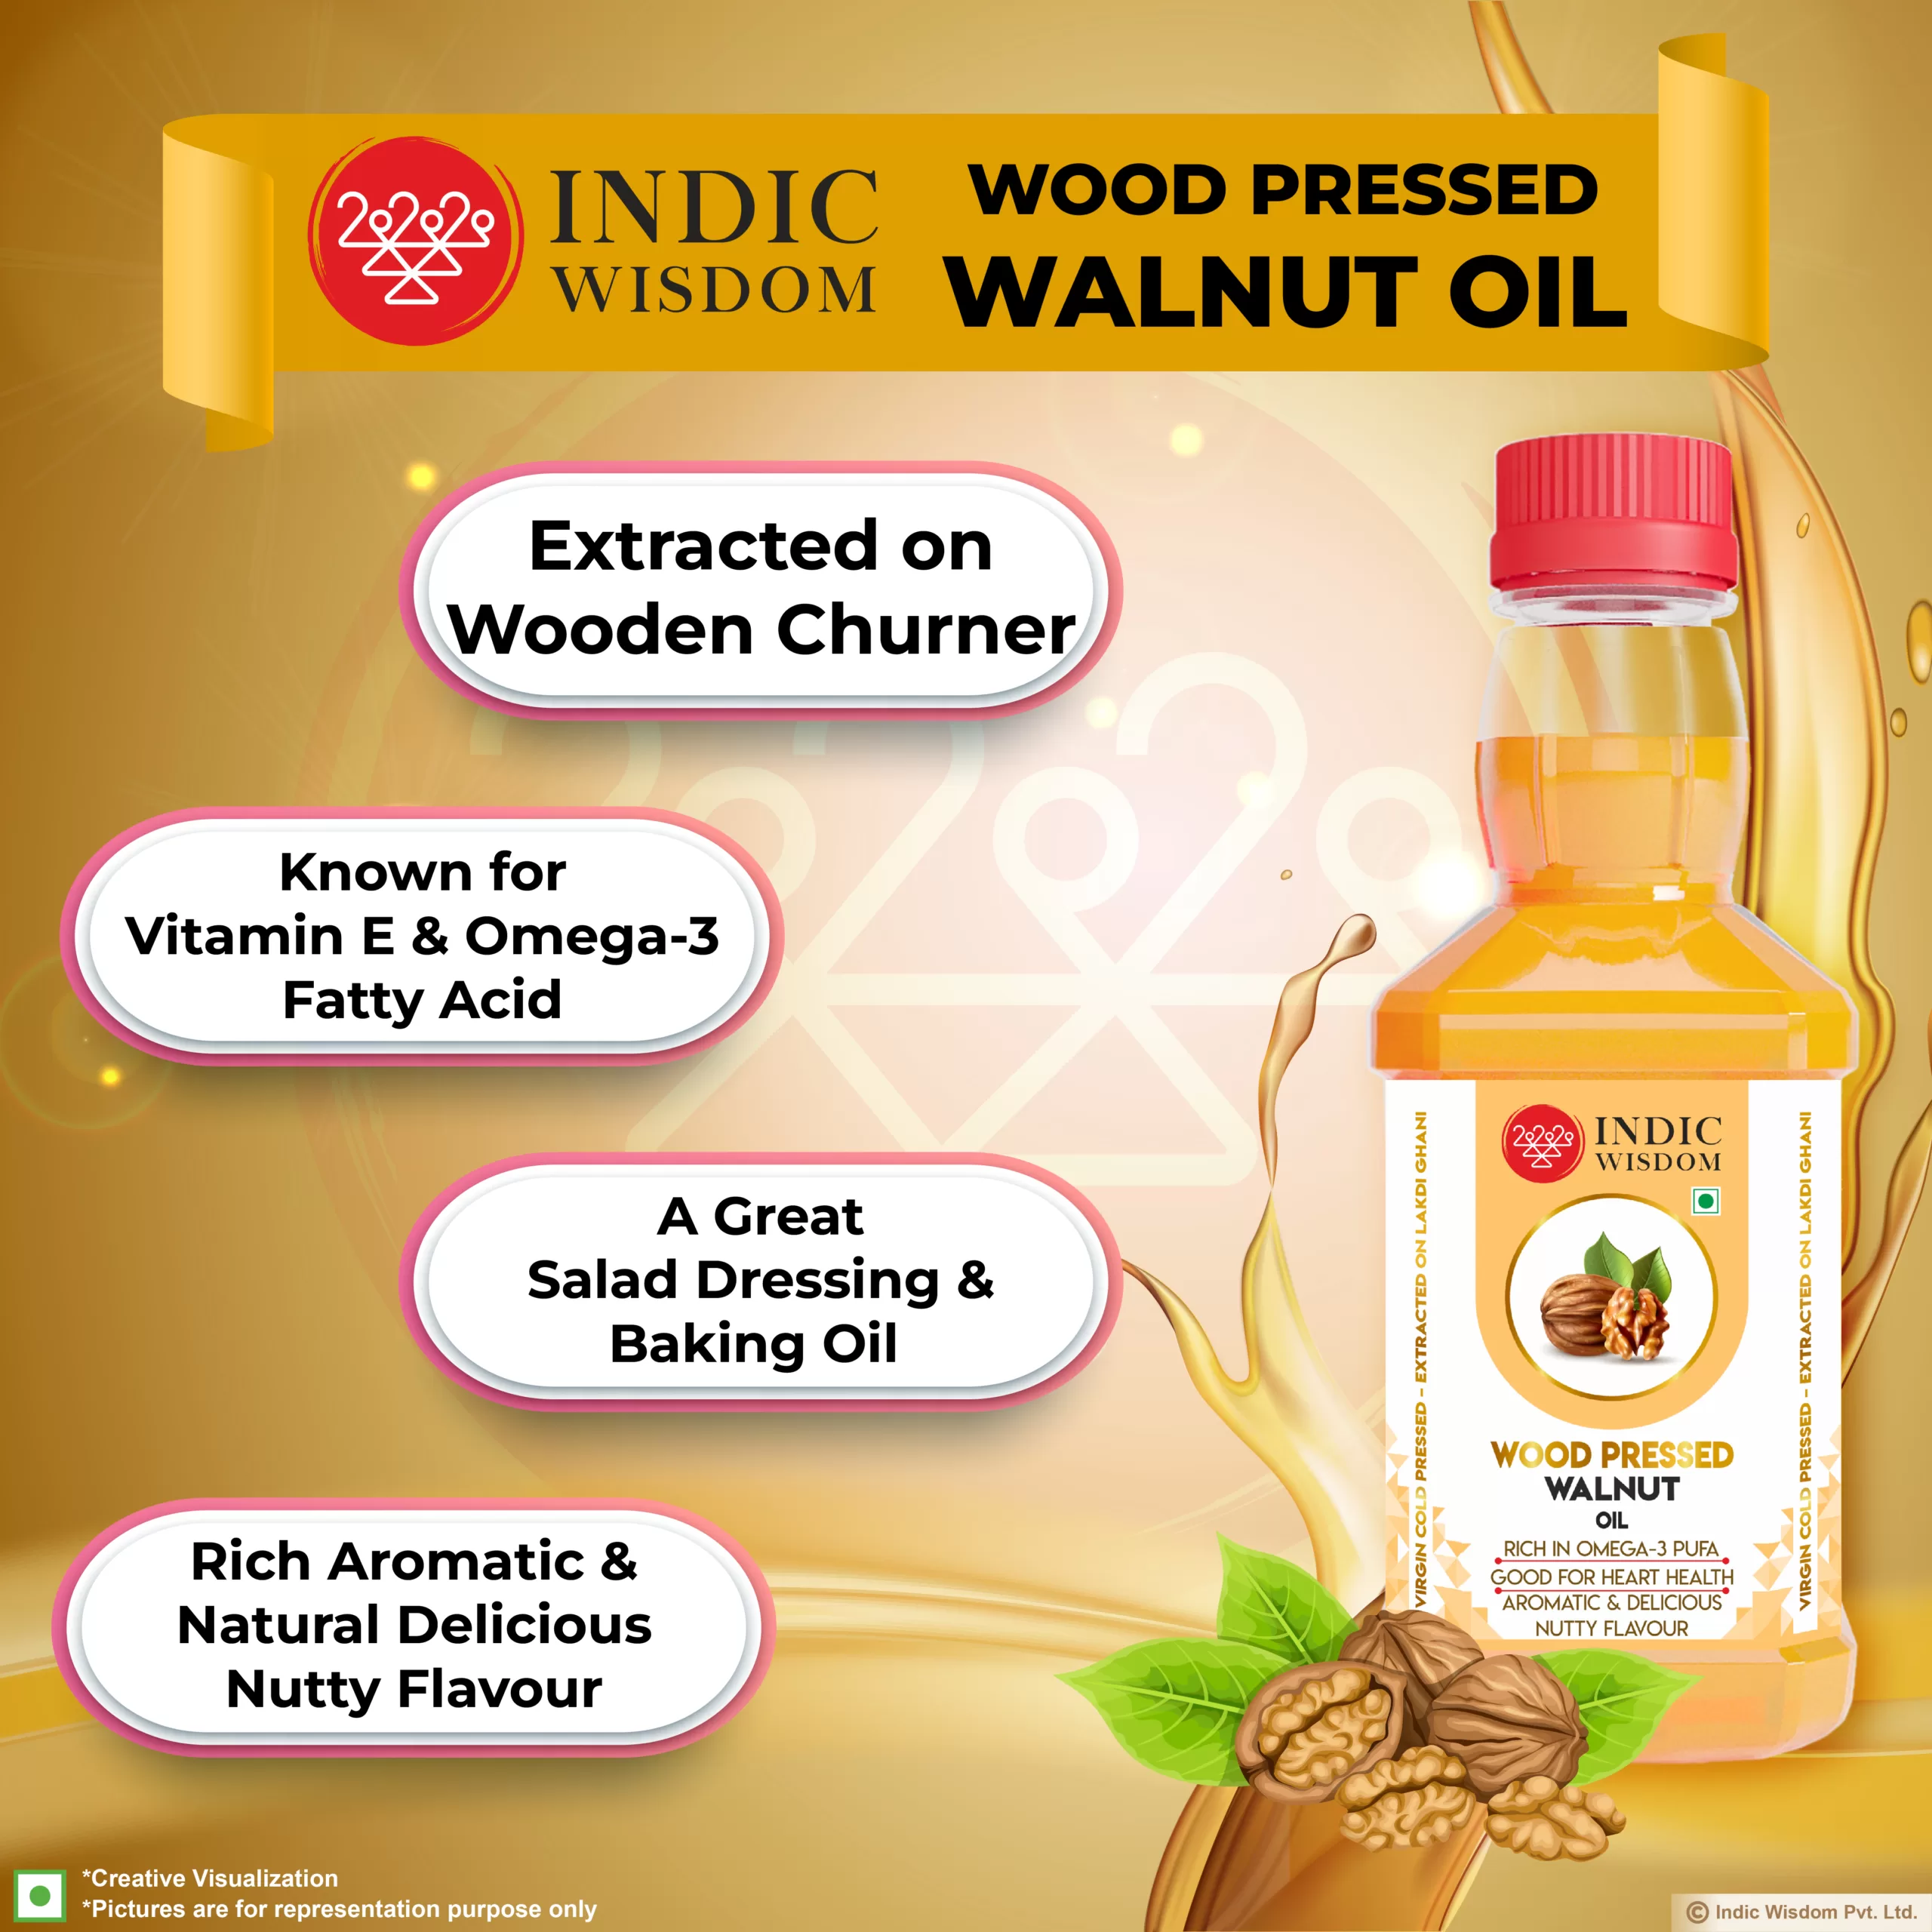 Why buy wood pressed walnut oil